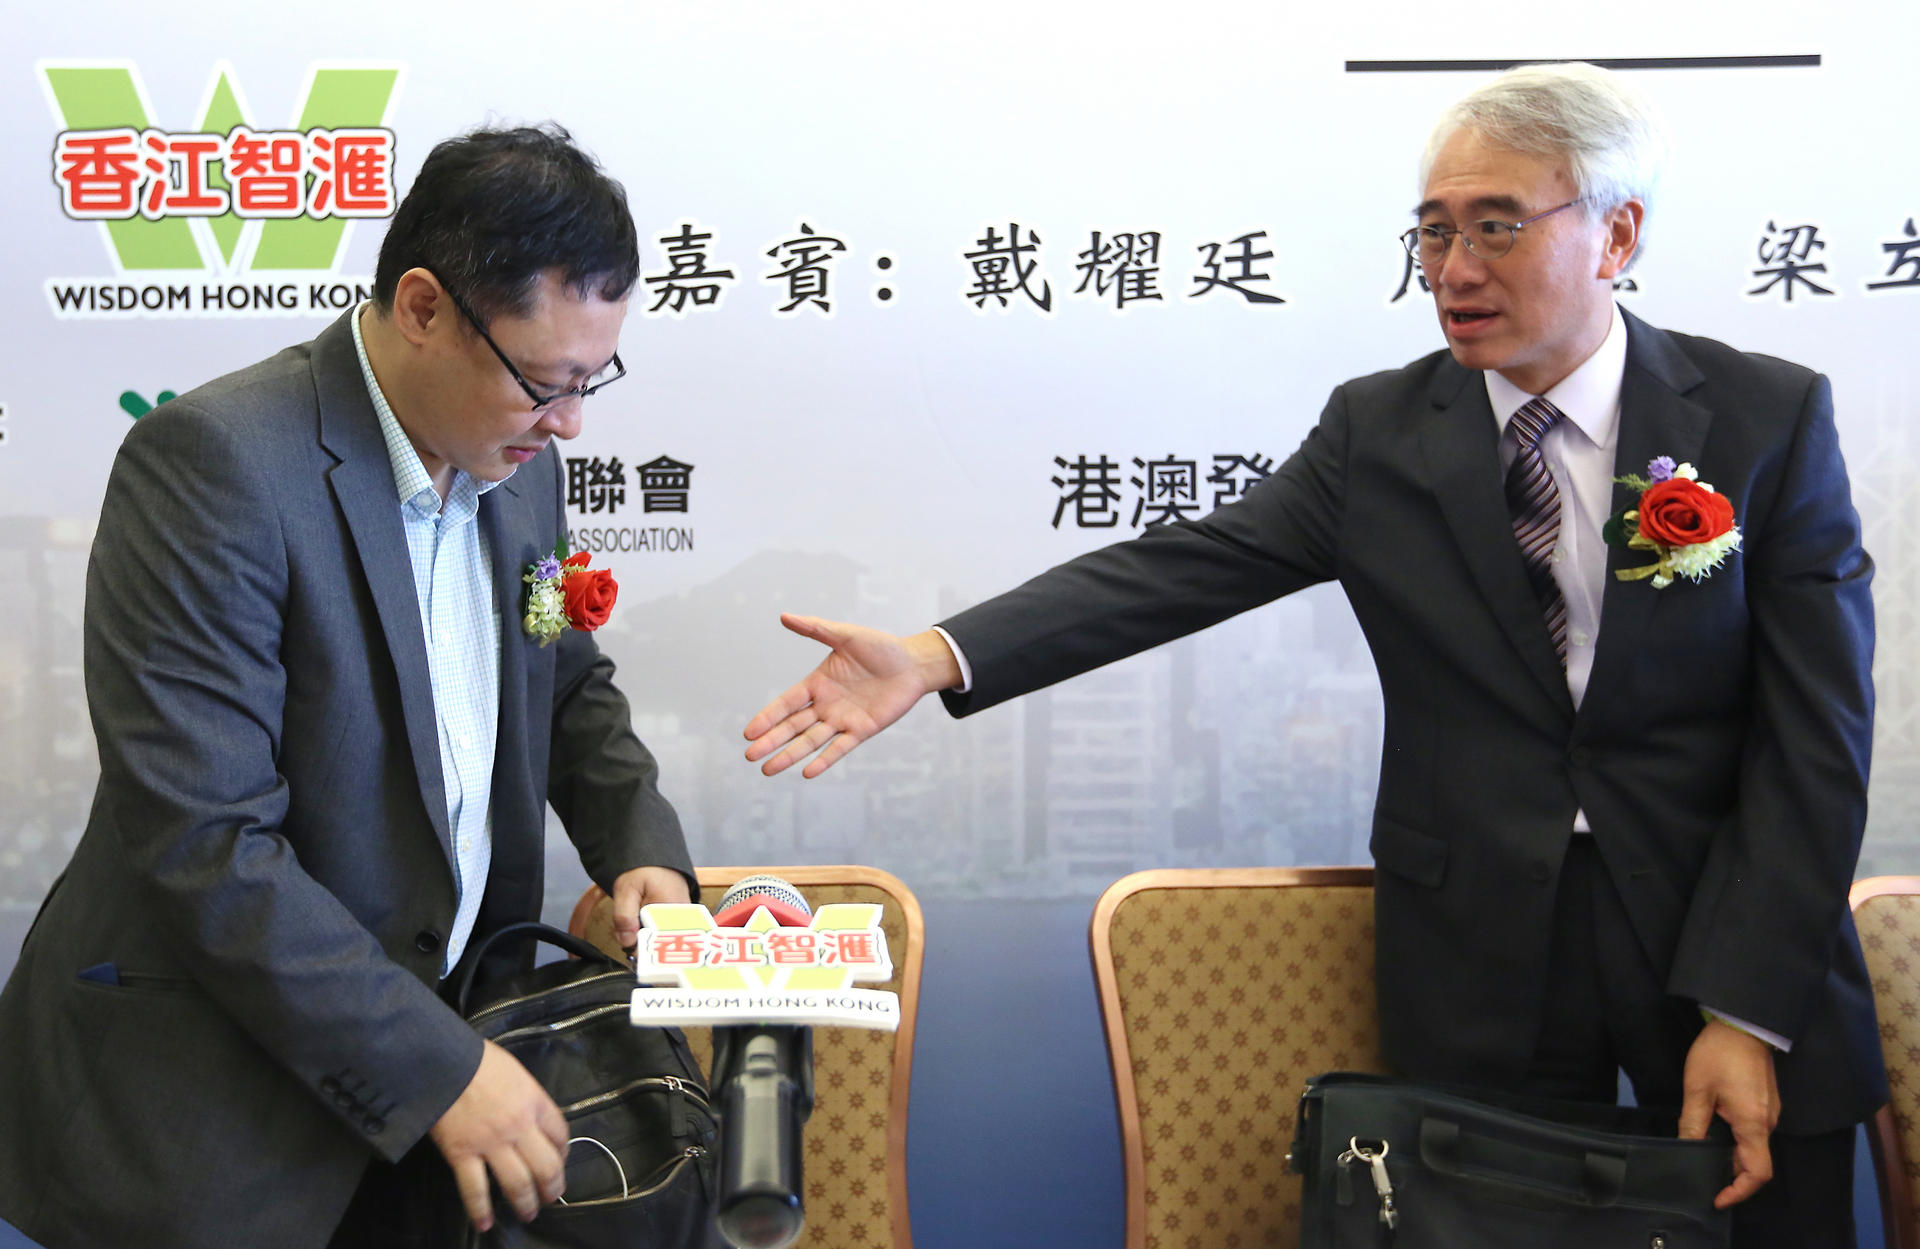 Benny Tai (left) and Robert Chow at the forum. Photo: Sam Tsang